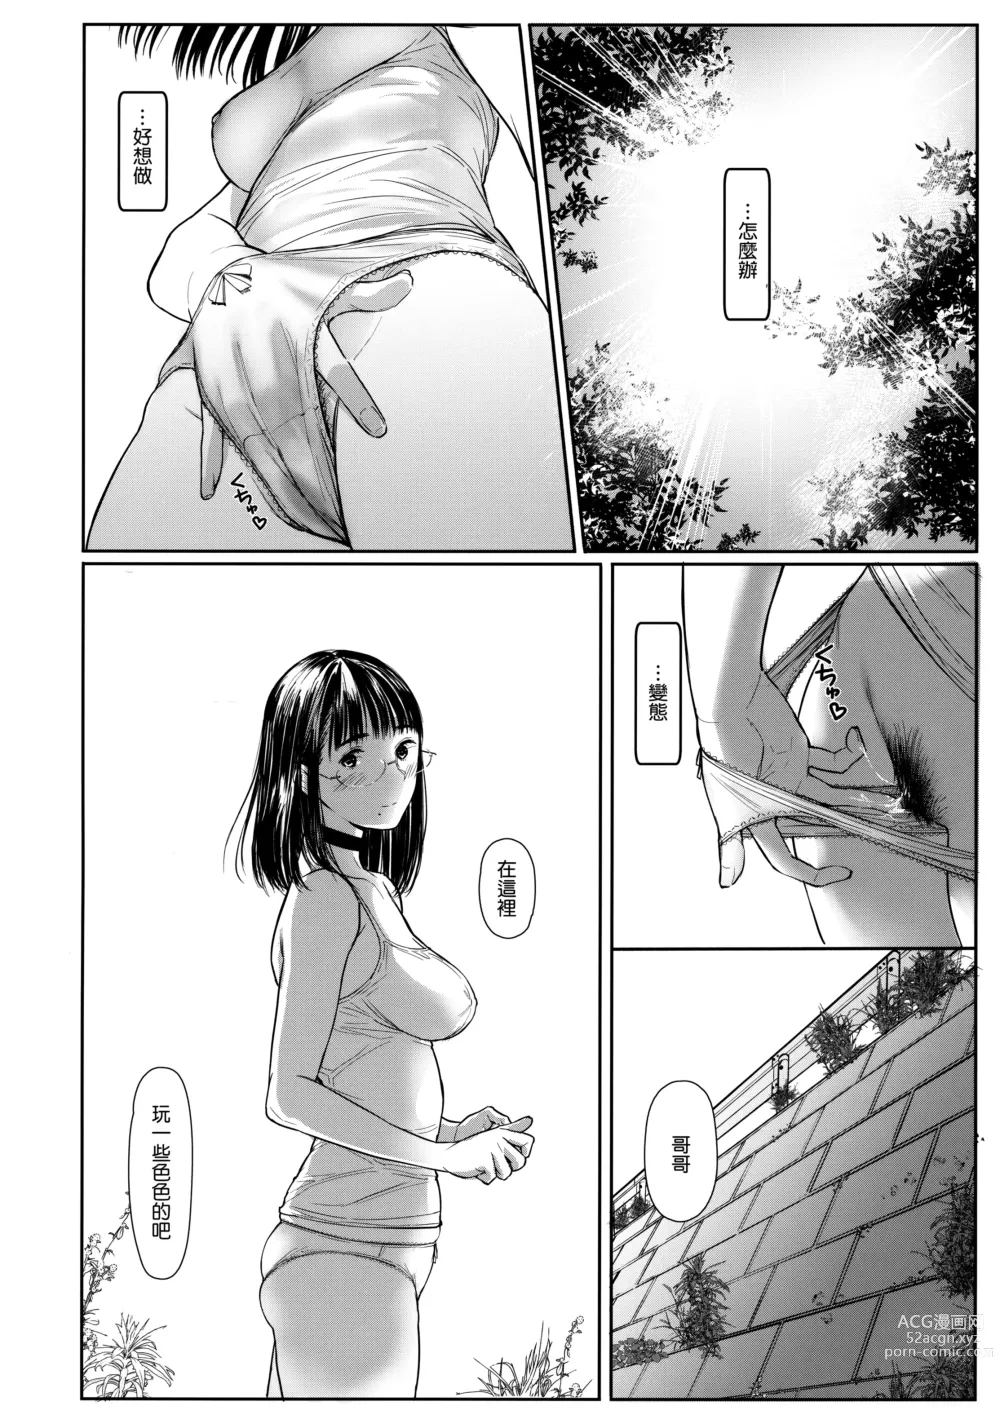 Page 149 of doujinshi Tonari no Chinatsu-chan 01-06